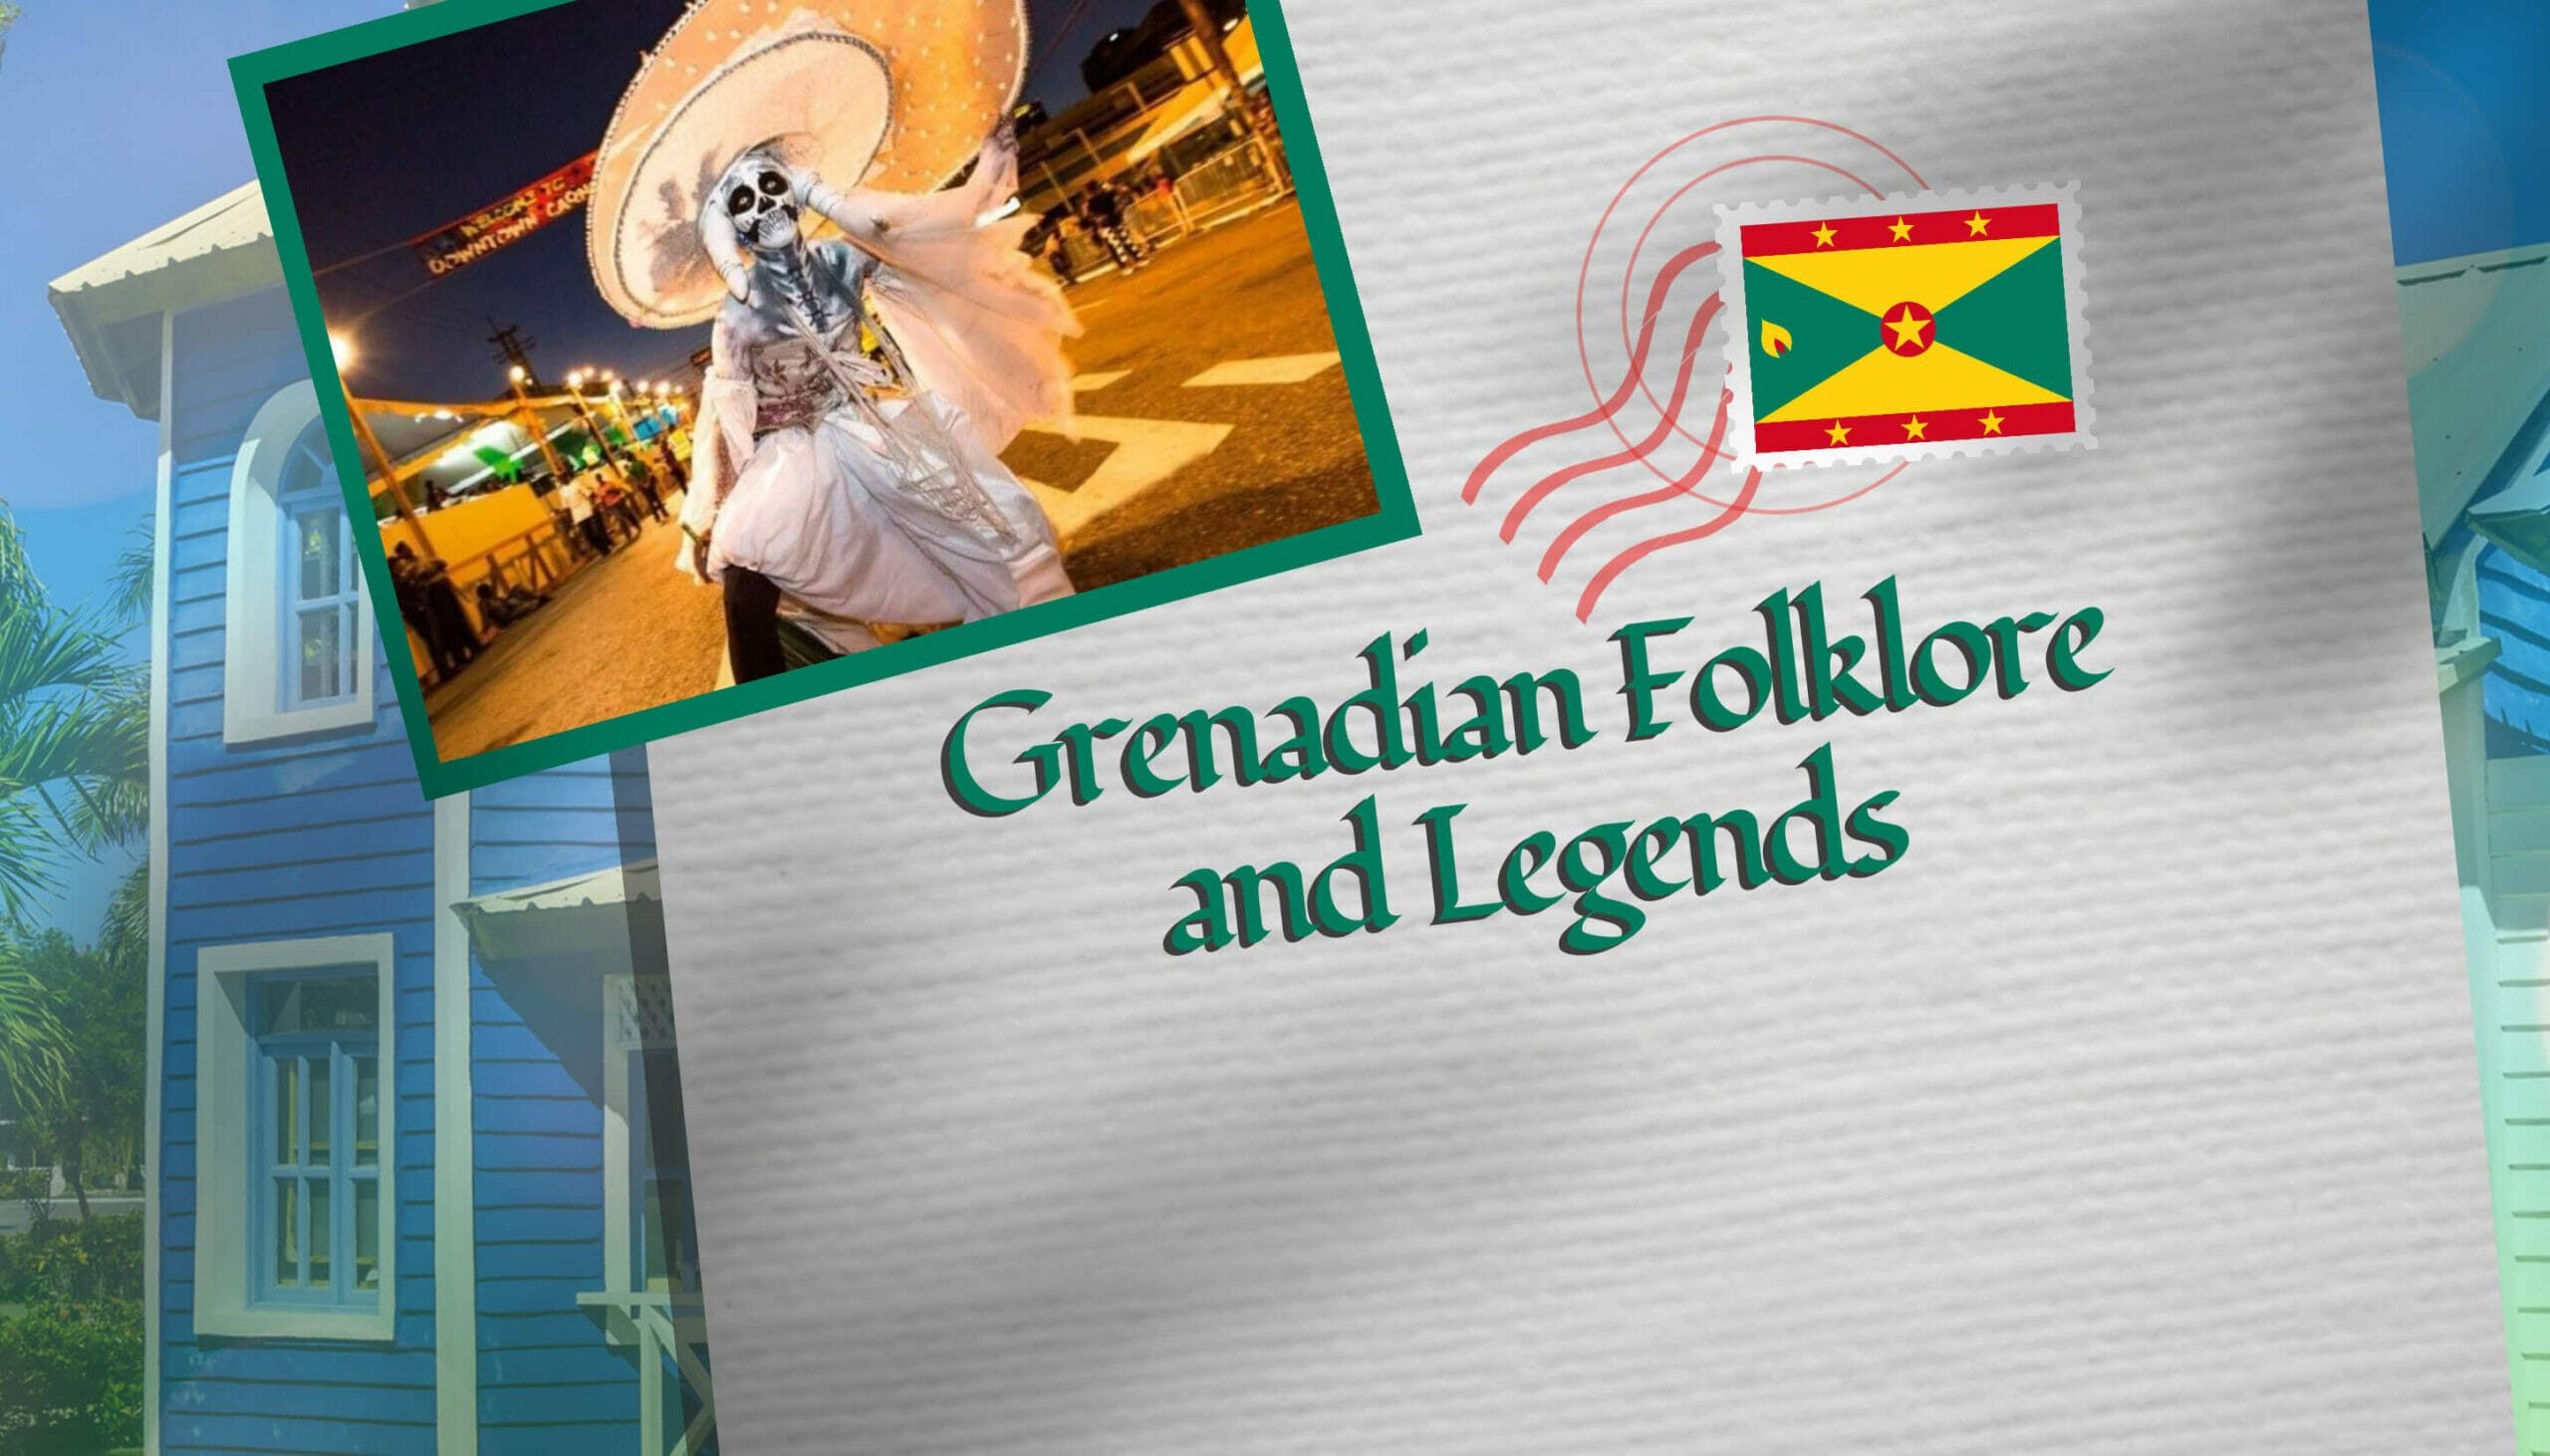 Grenadian Folklore and Legends